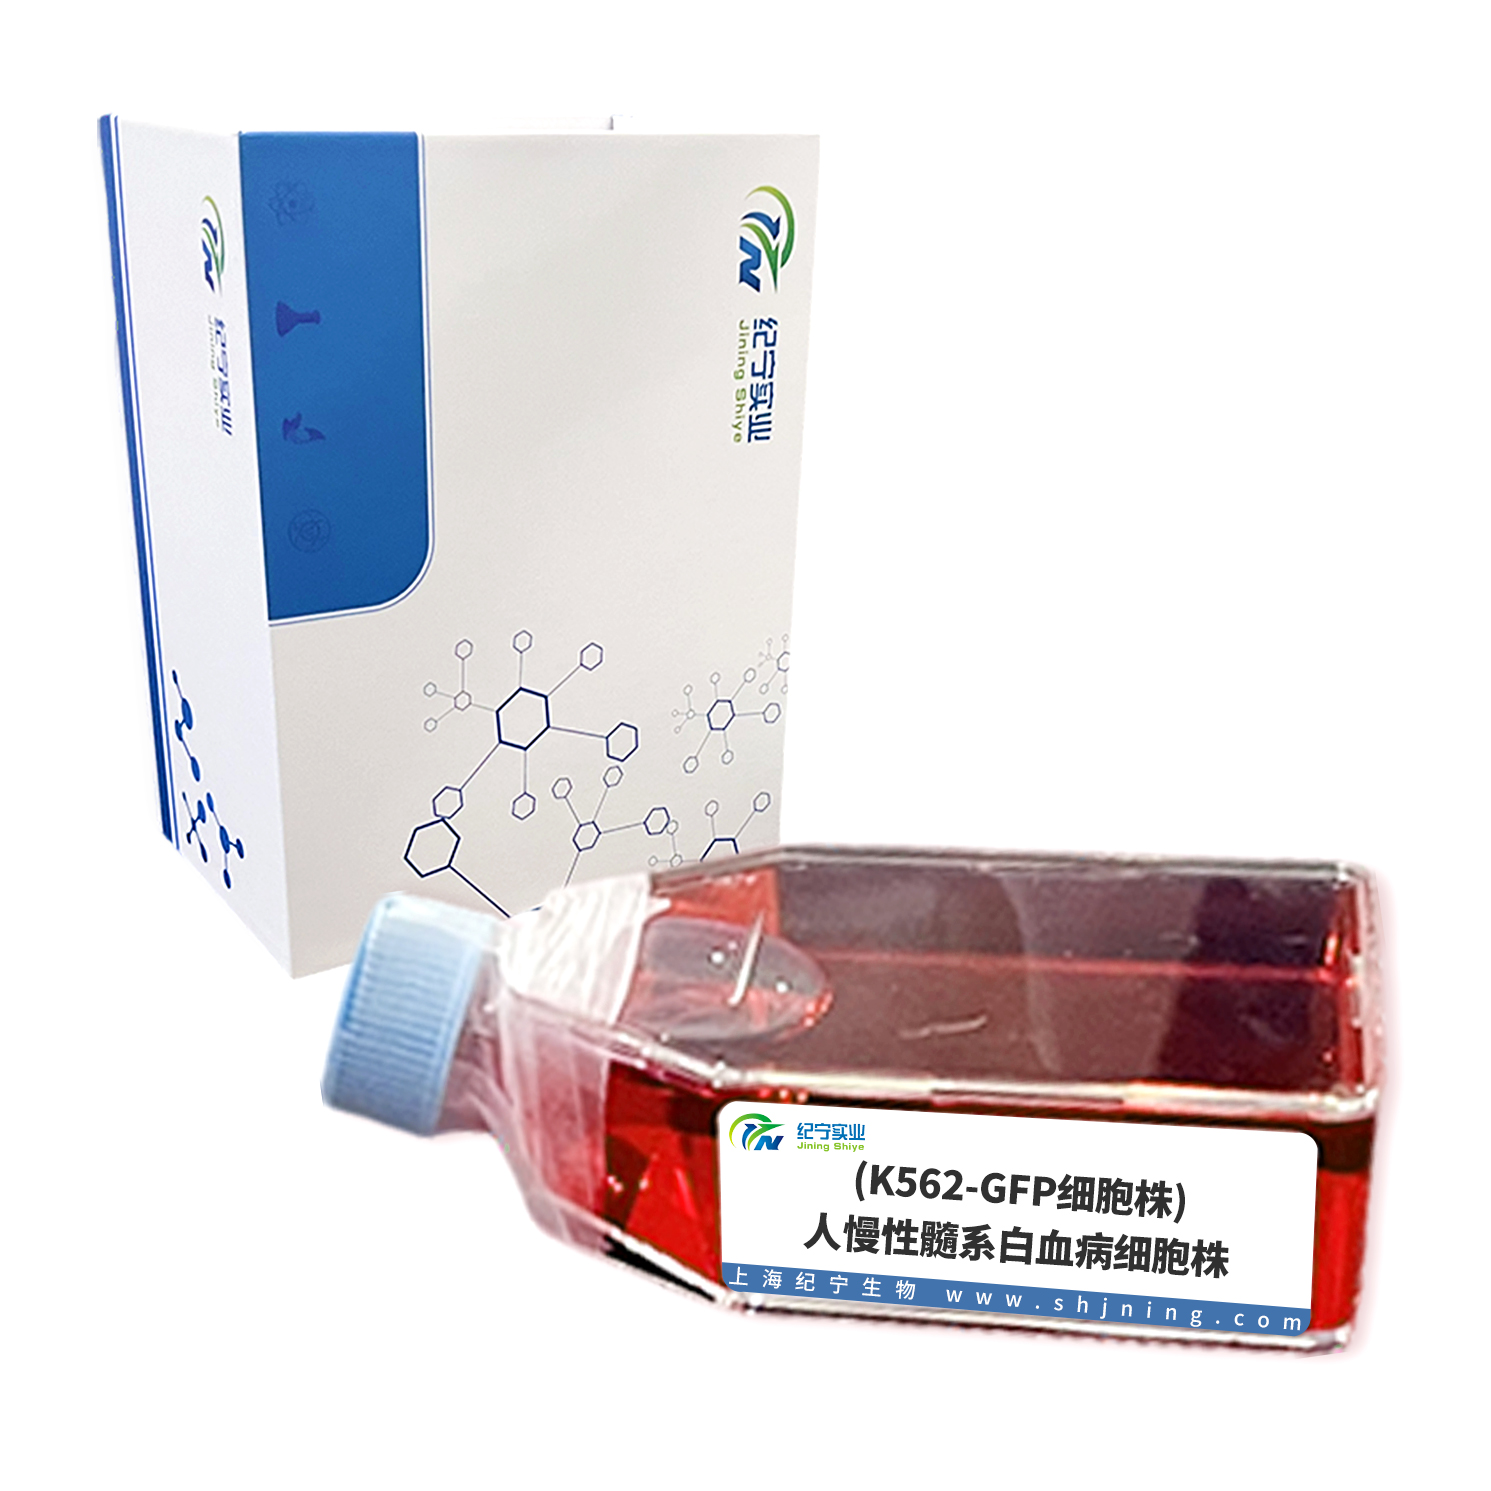 (K562-GFP细胞株)人慢性髓系白血病细胞株